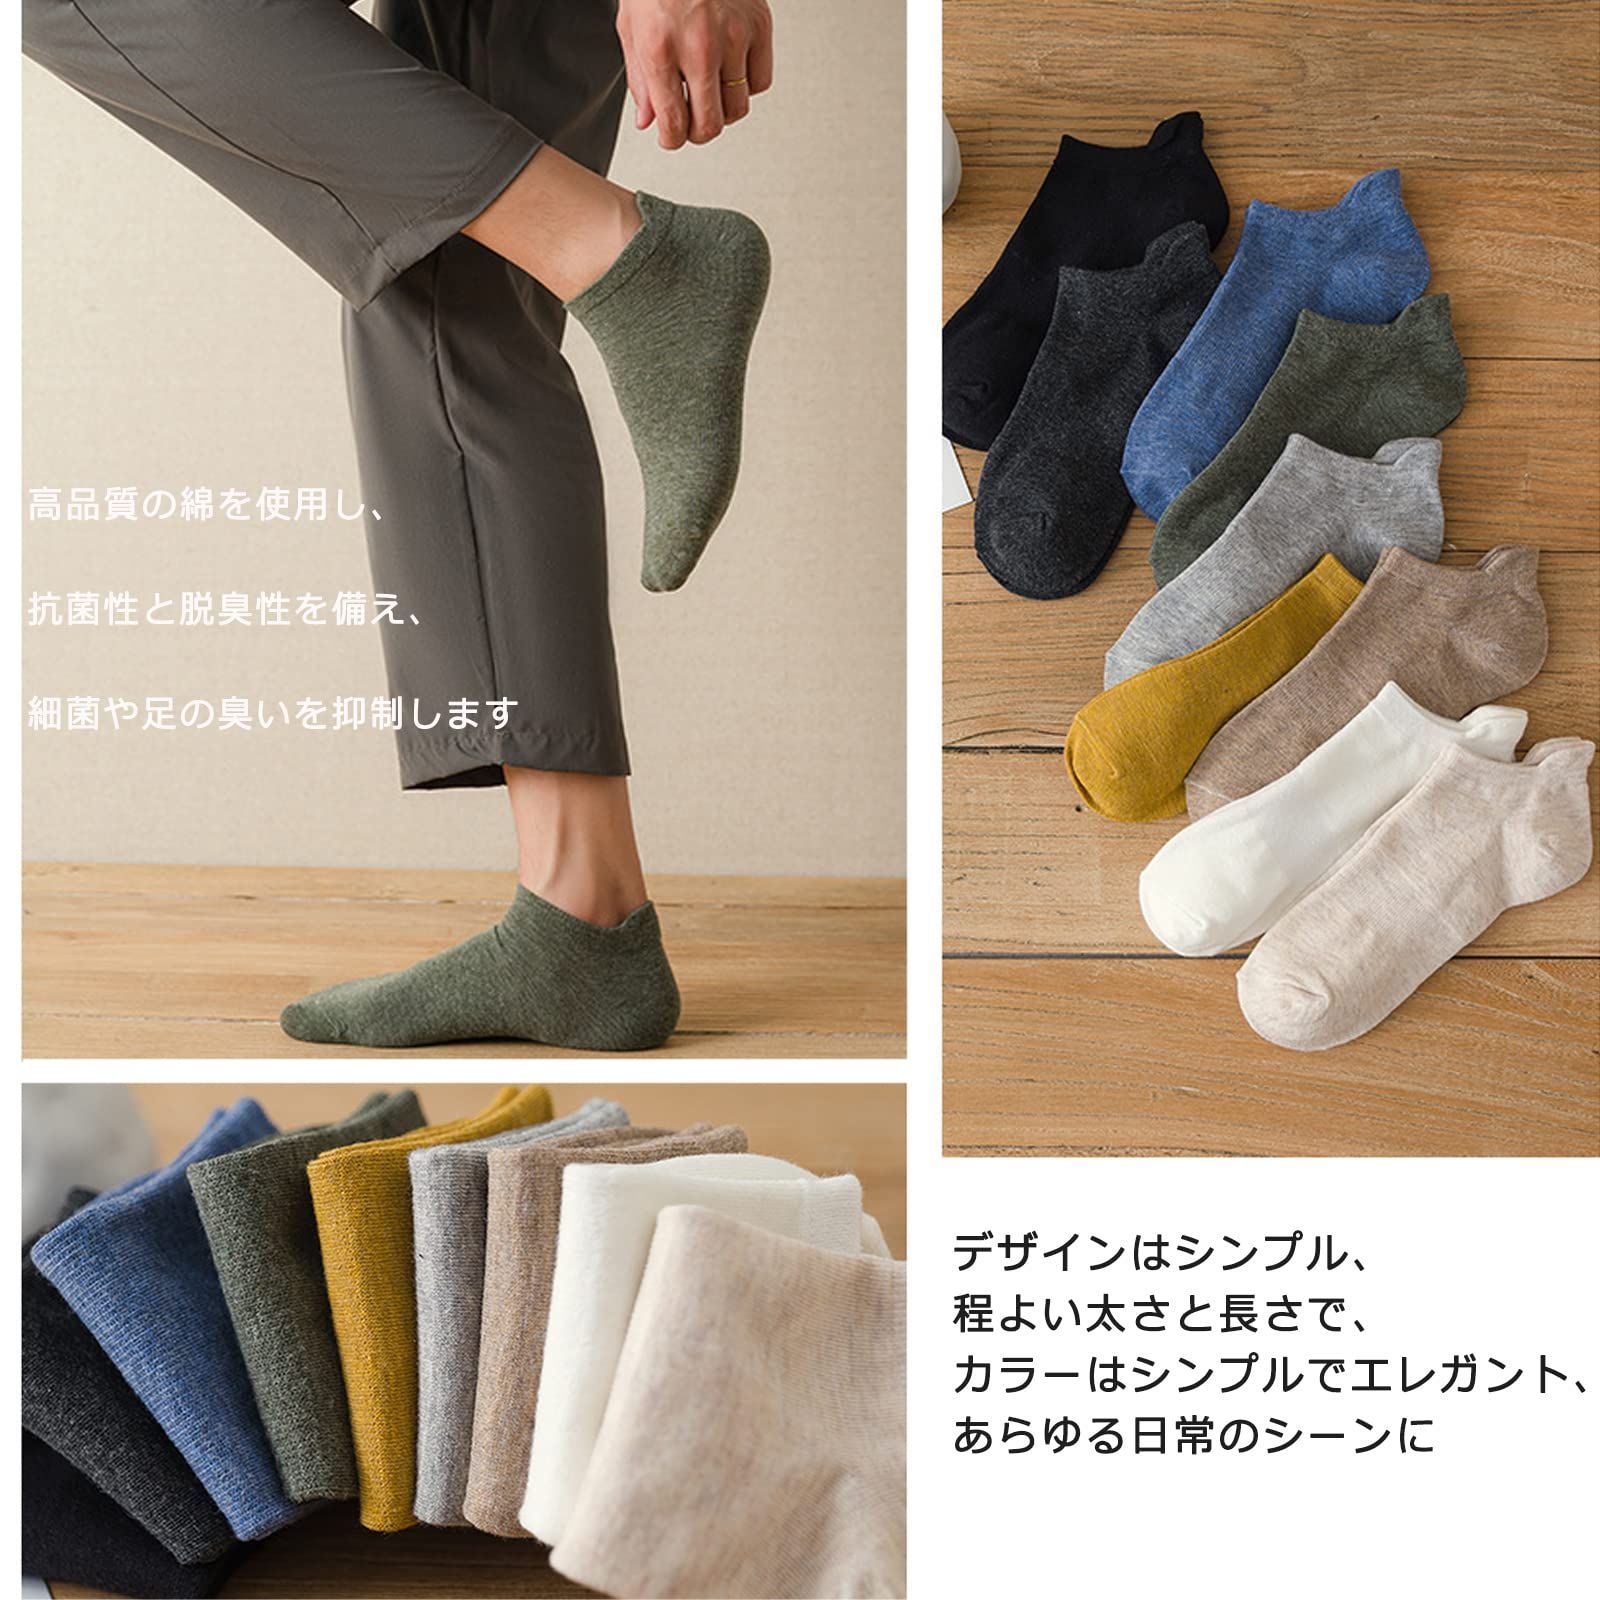 特価商品】綿 】男性靴下セット 通気性 ショート【防臭・抗菌・吸汗